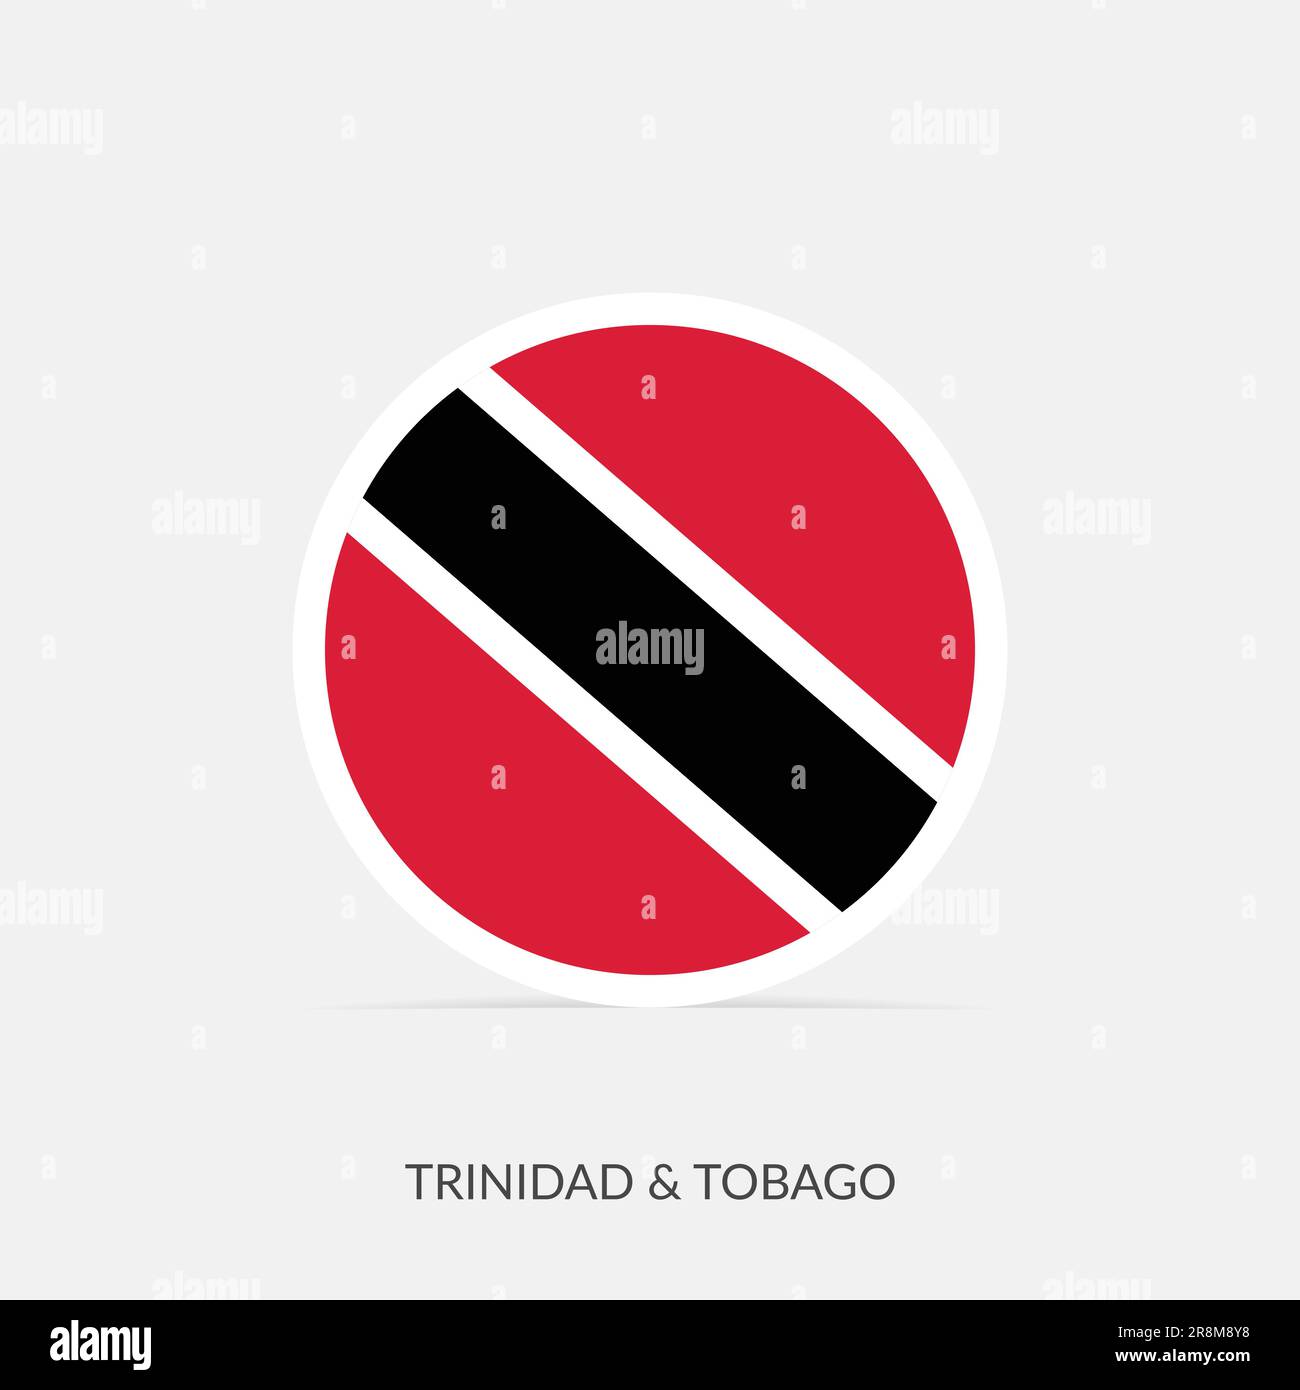 Trinidad & Tobago round flag icon with shadow. Stock Vector